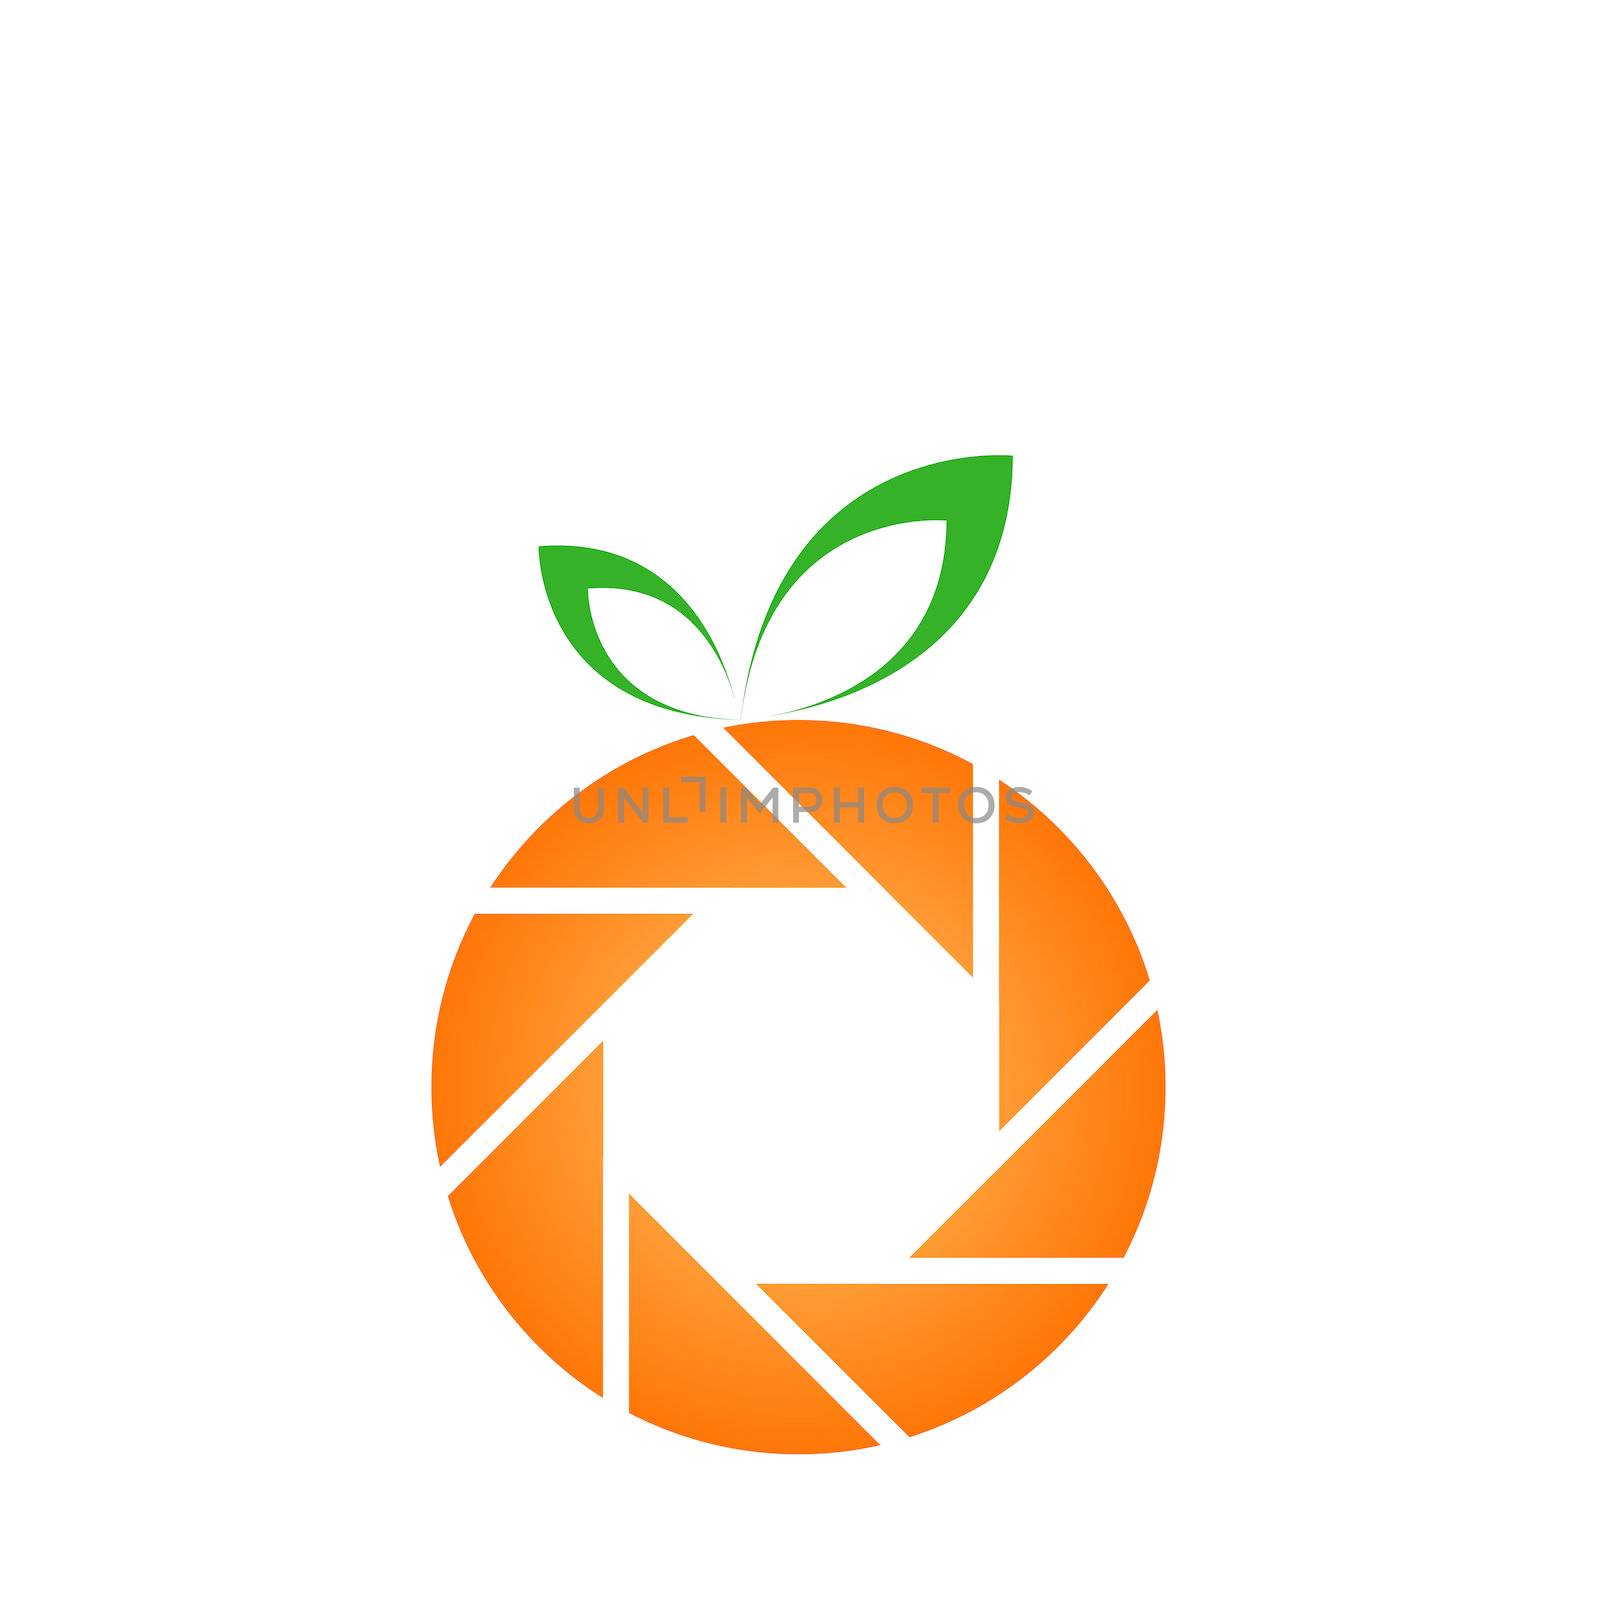 Orange photography logo by shawlinmohd